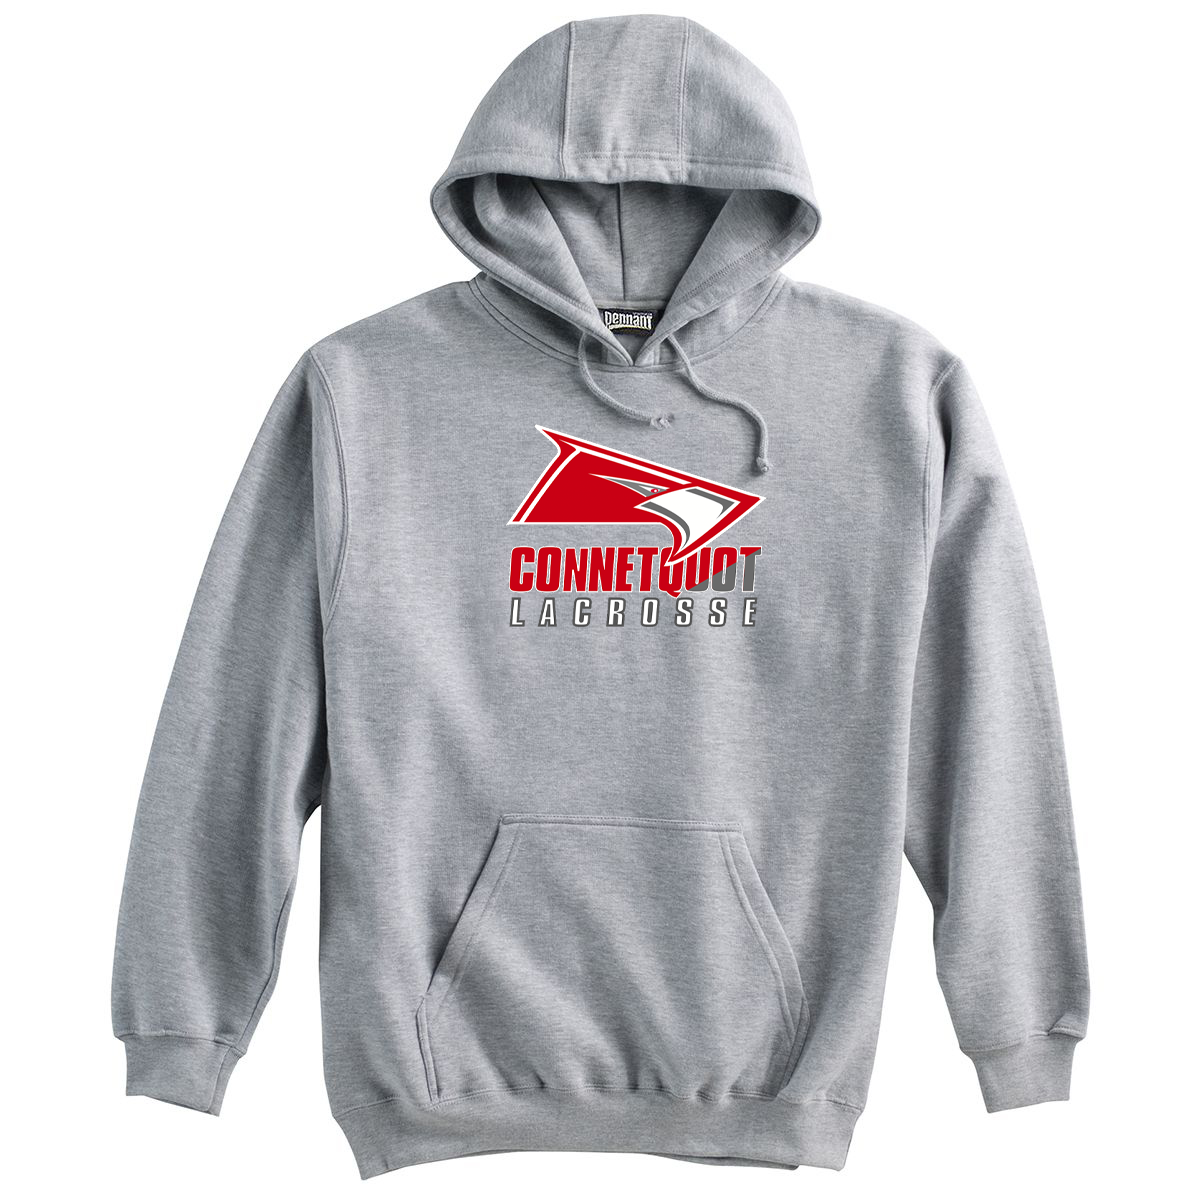 Connetquot Youth Lacrosse Sweatshirt